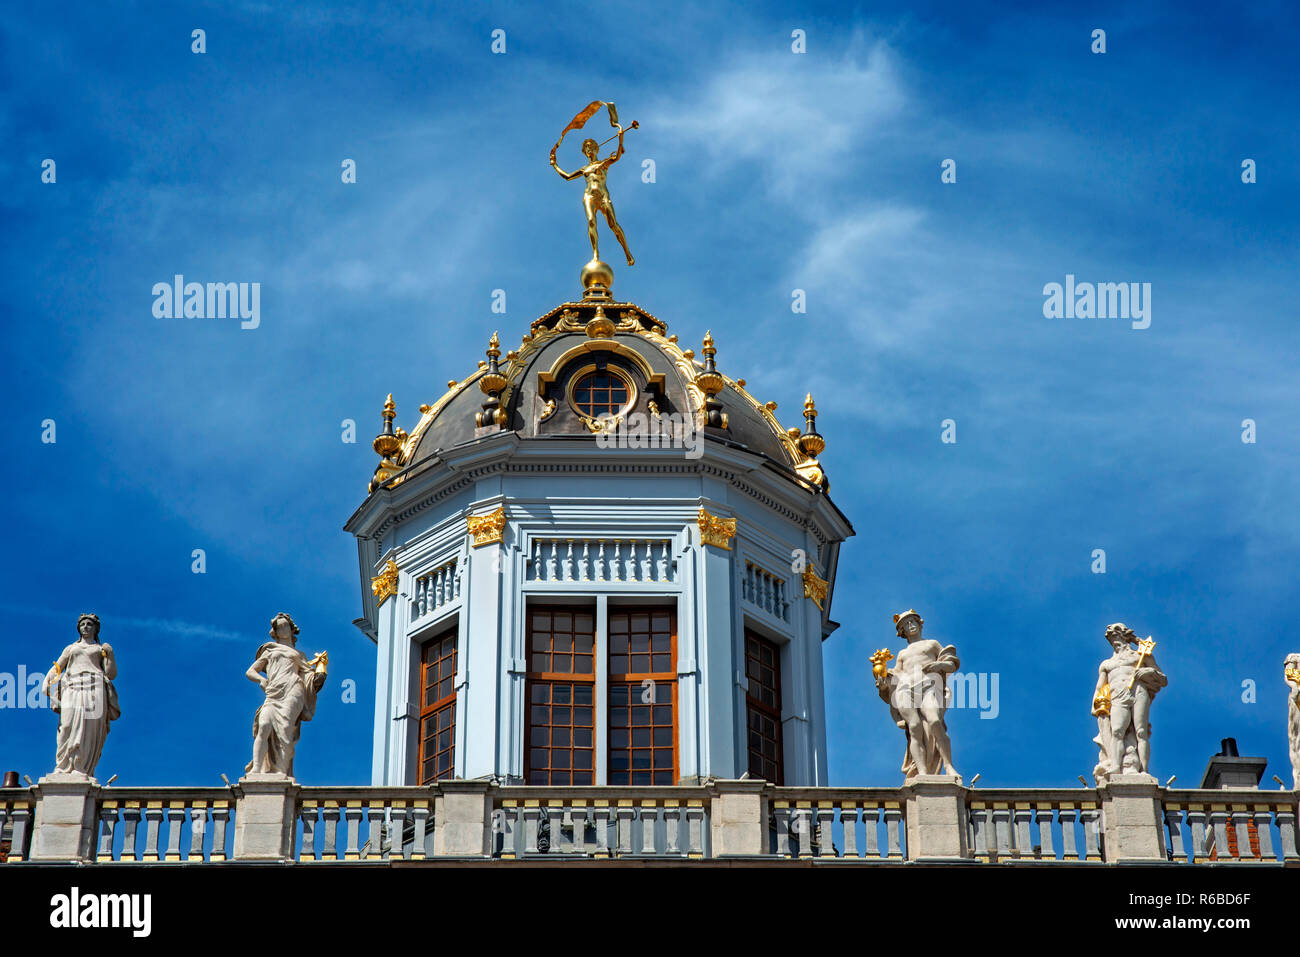 Statua sulla parte superiore della casa di fornai Grand Place. Xv secolo architettura in Grand Place di Bruxelles, un sito Patrimonio Mondiale dell'UNESCO, Bruxelles, Belgio Foto Stock